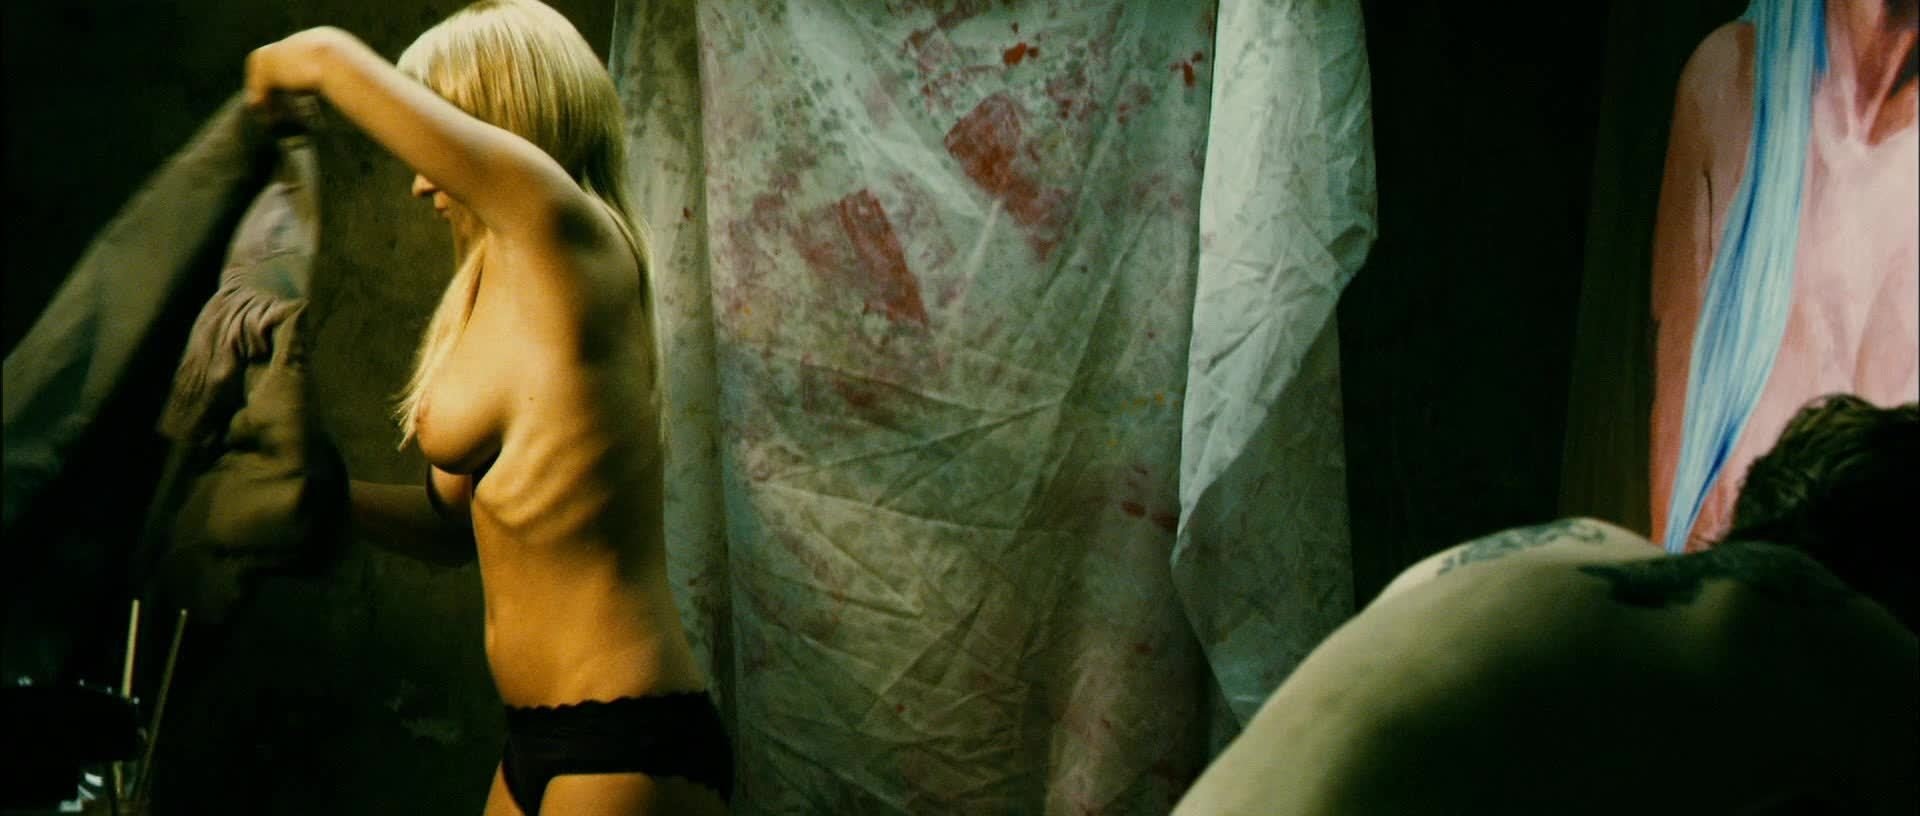 Зоя рудольфовна бербер голая (51 фото) - Порно фото голых девушек